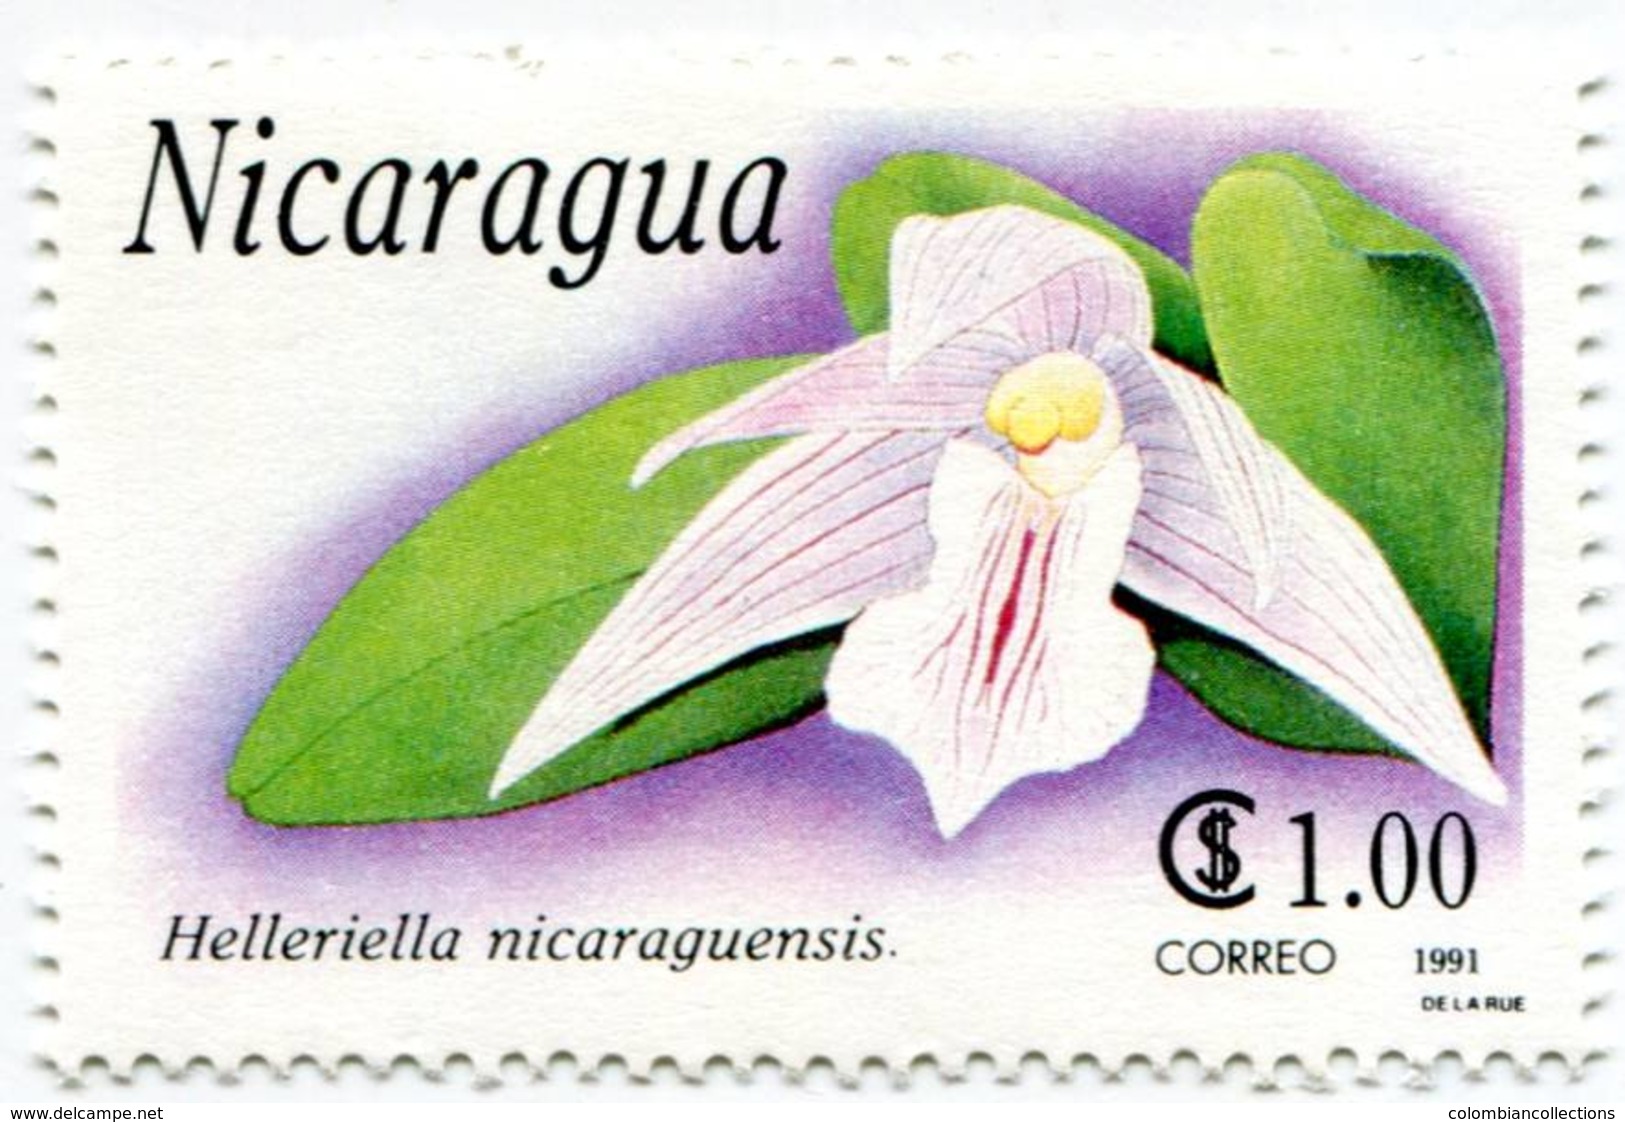 Lote 1991, Nicaragua, 1863-9, Sello, Stamp, 7 v, Orquidea, Orchid